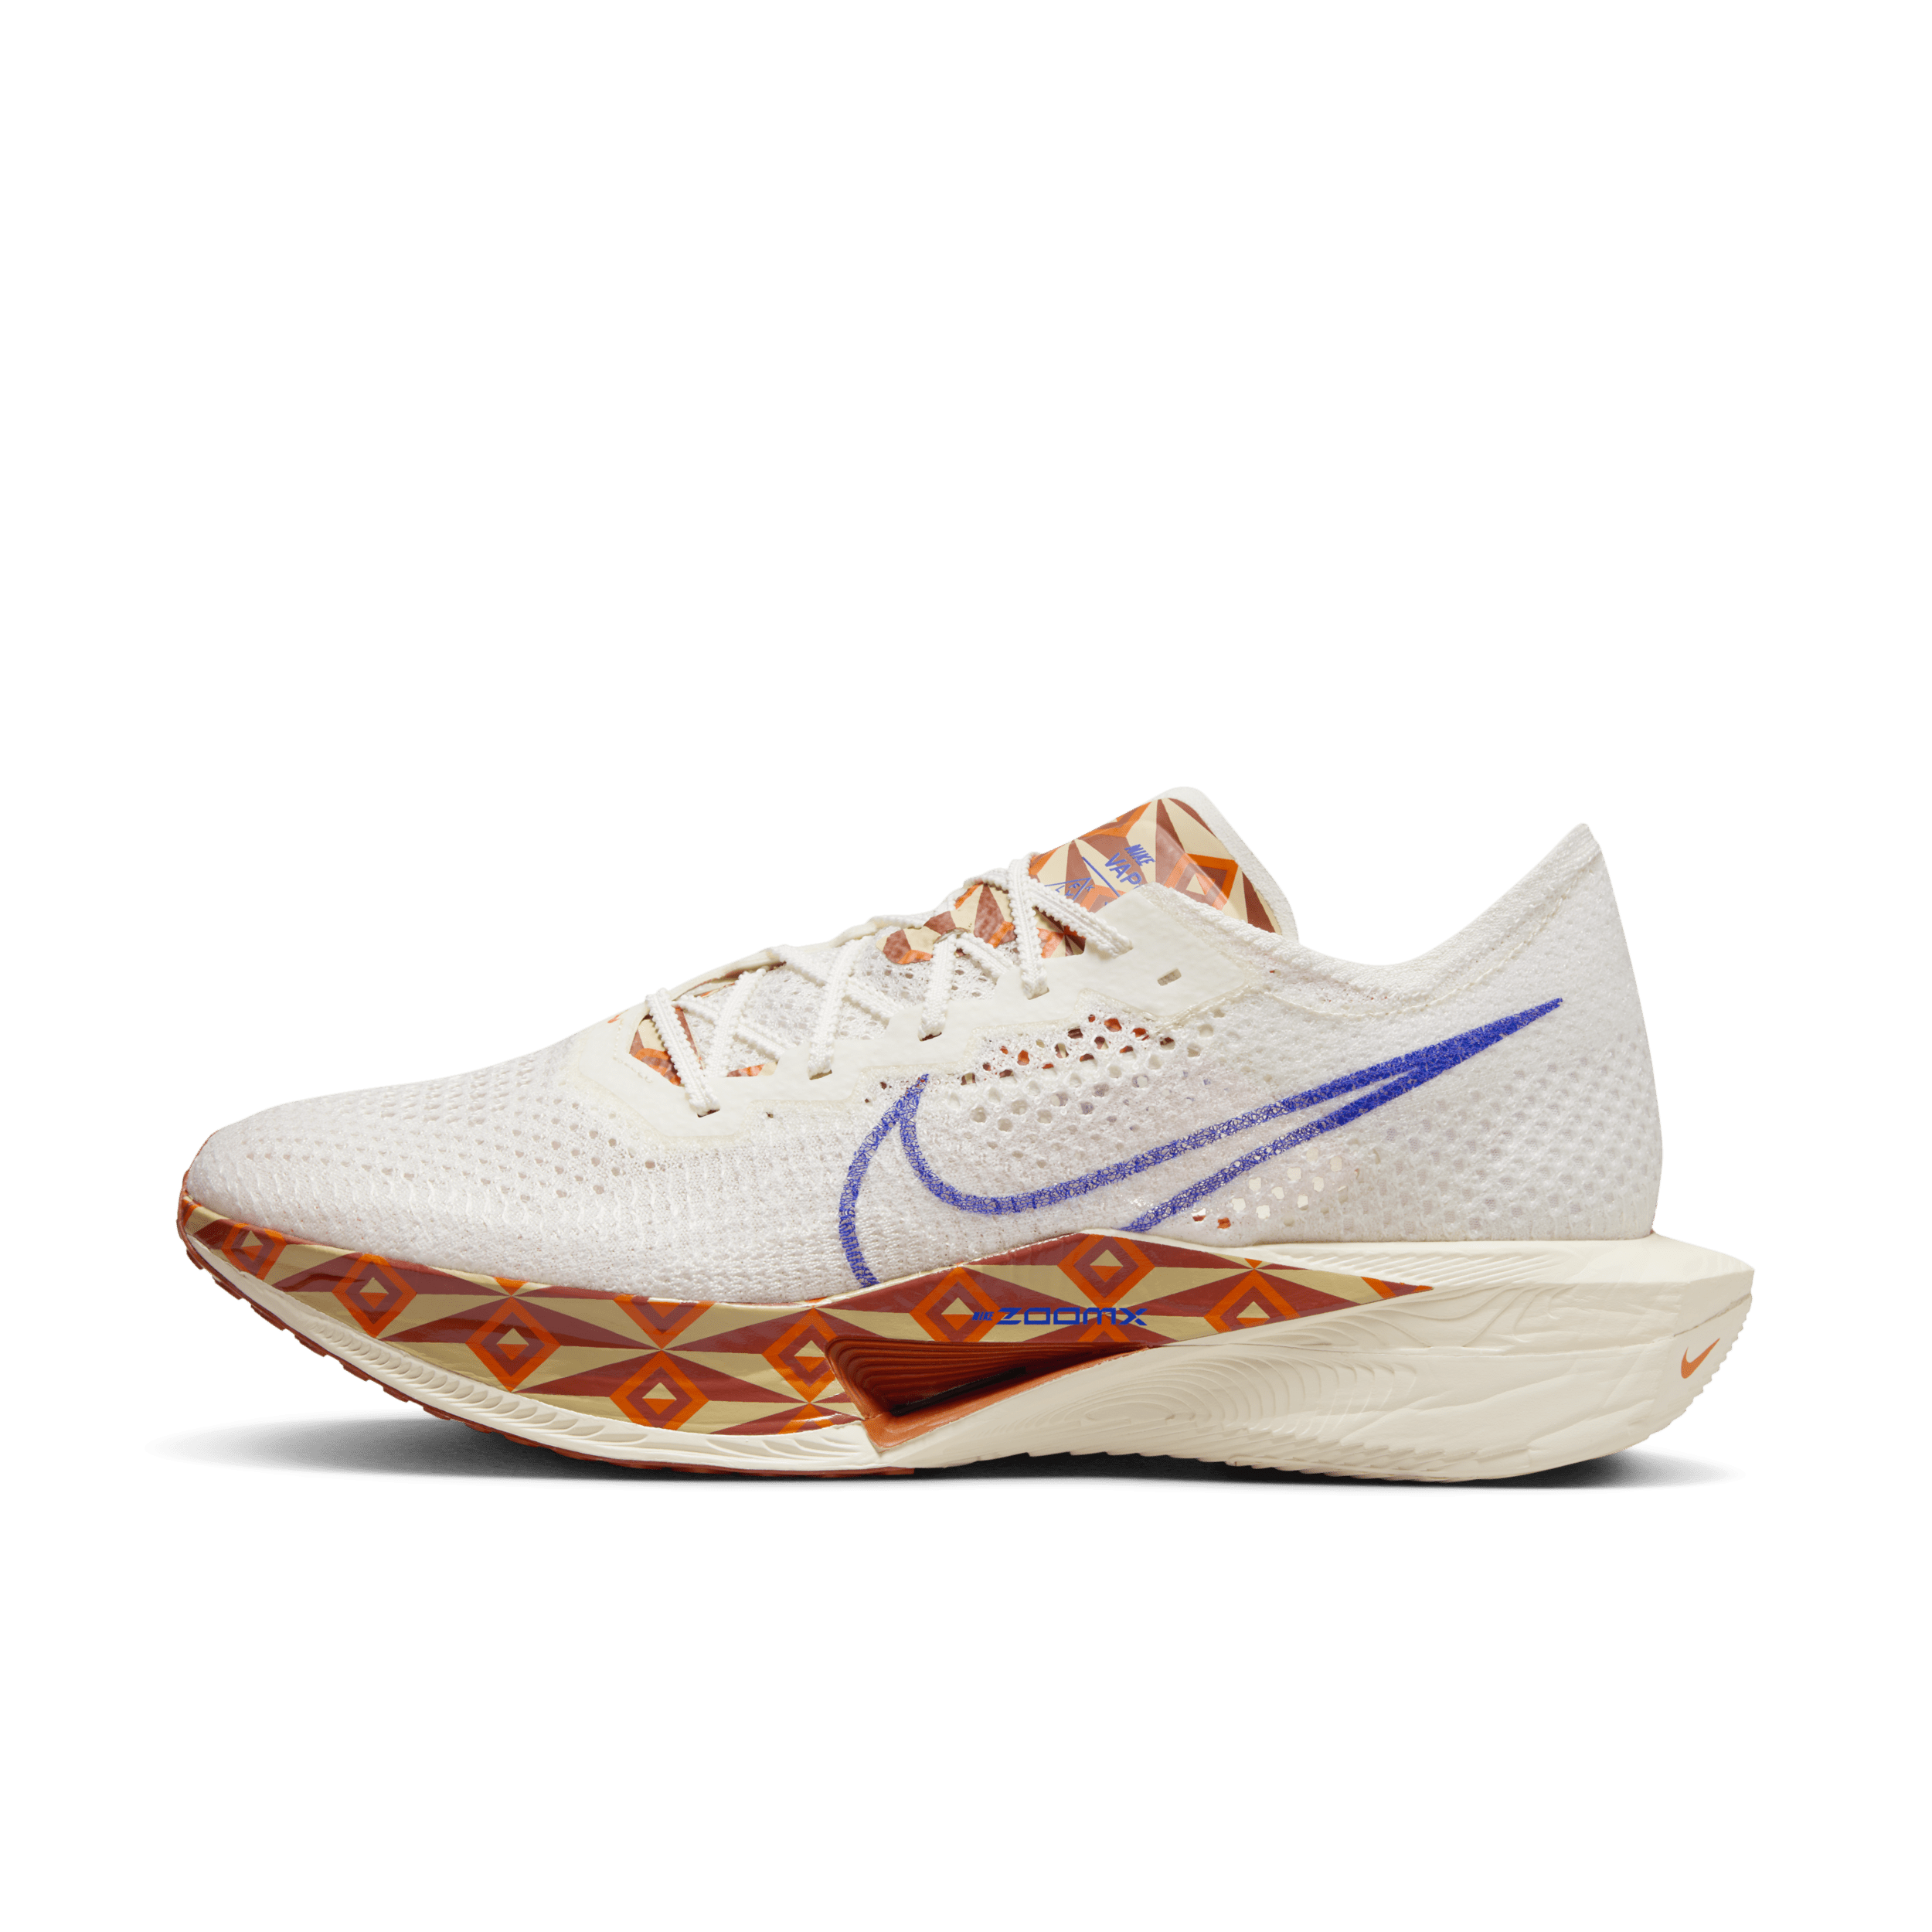 Scarpa da gara su strada Nike Vaporfly 3 Premium – Uomo - Bianco